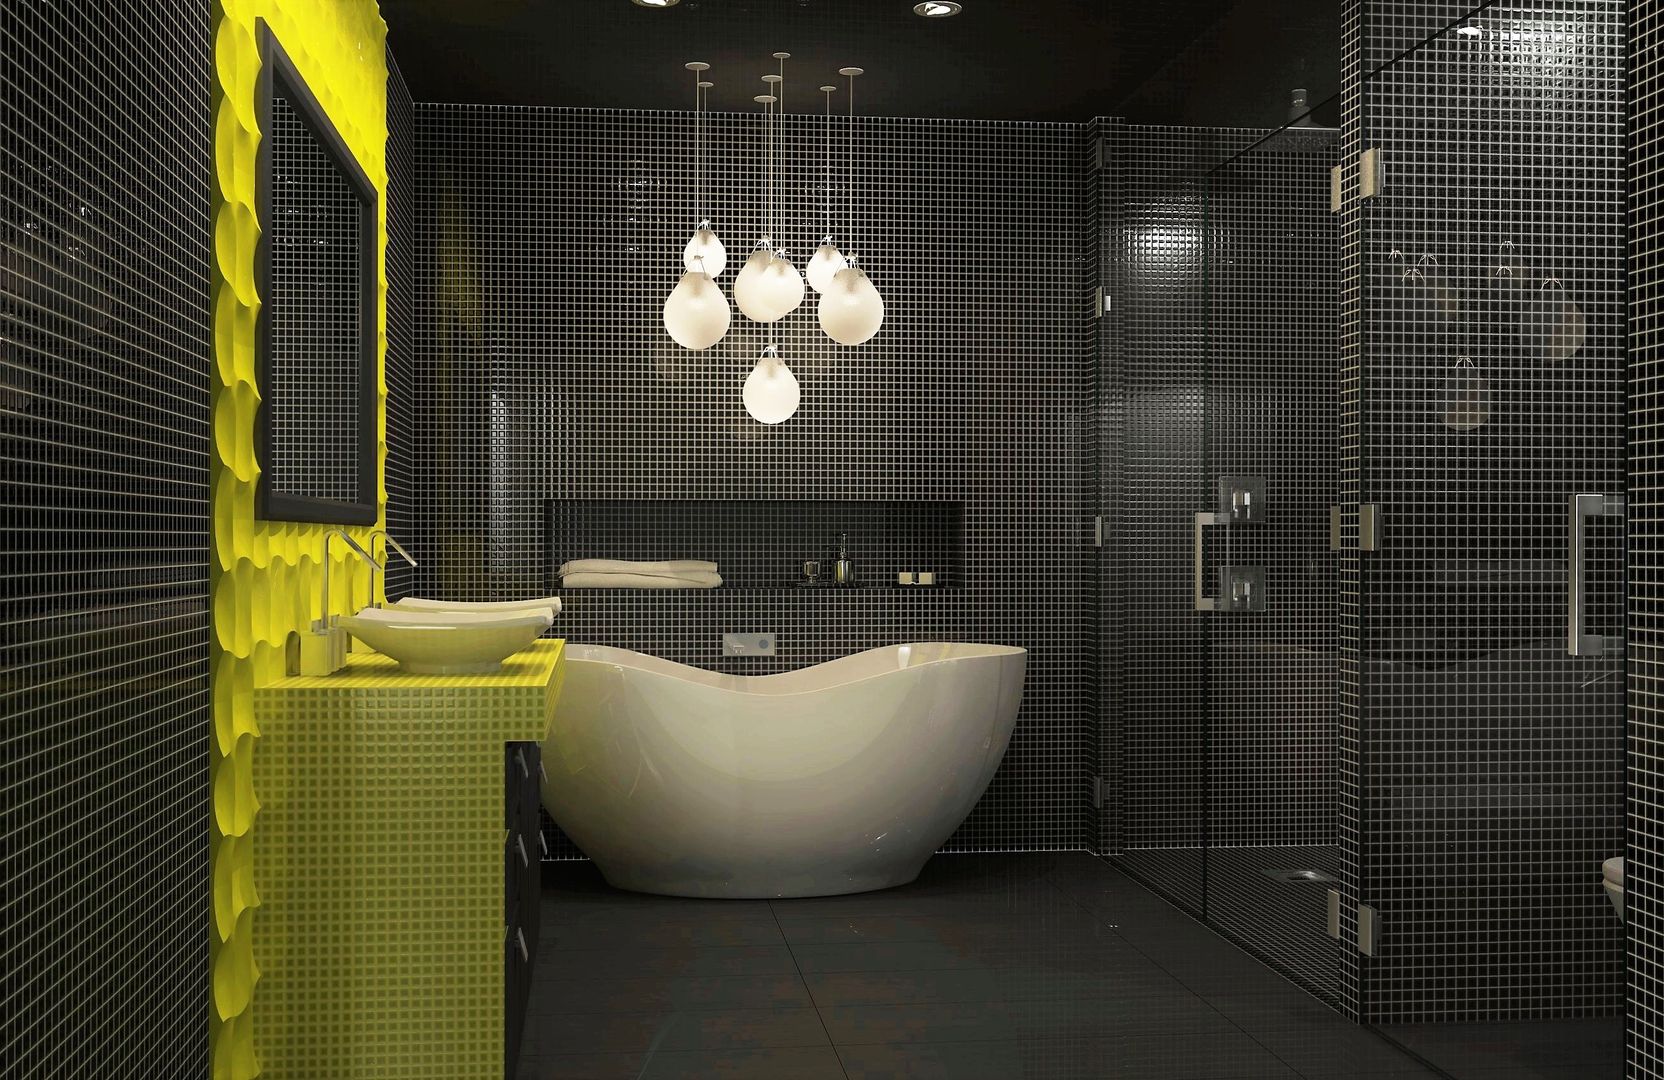 Bathroom interior design Lena Lobiv Interior Design حمام interior,interiordesign,bathroom,mosaic tile,bright colours,homedecor